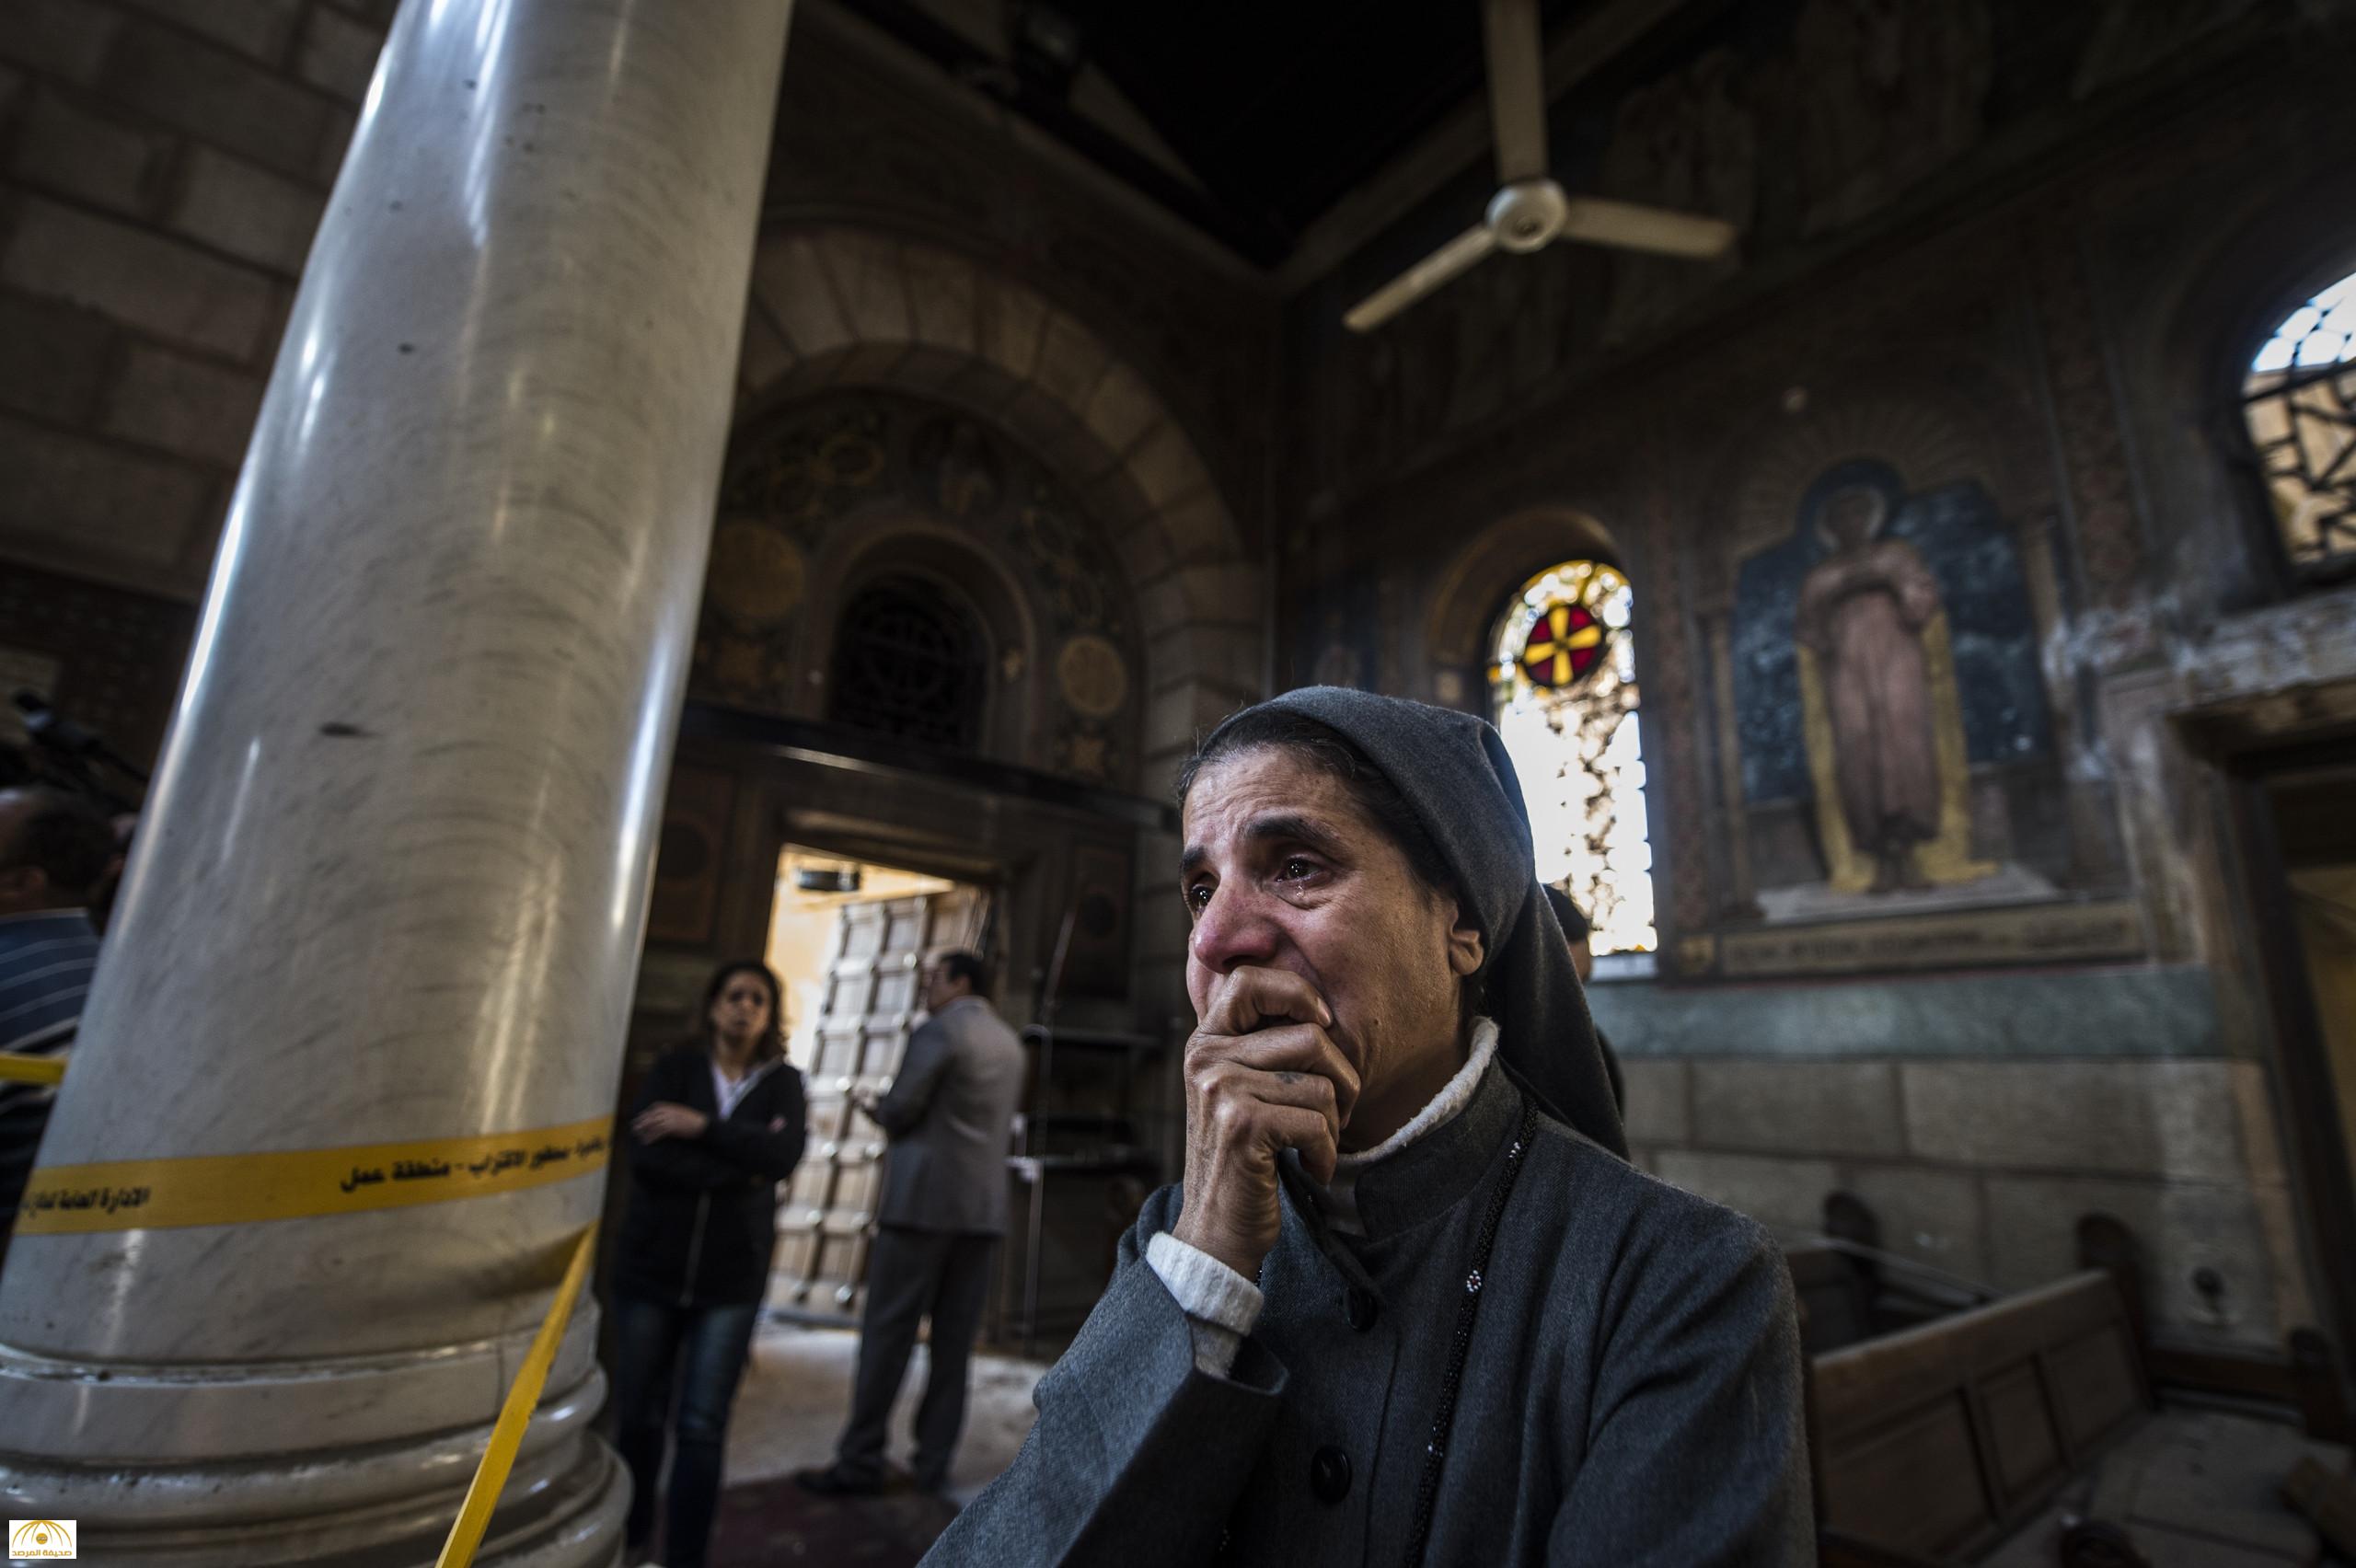 كشف عن اسم المنفذ.. "داعش" يعلن مسؤوليته عن تفجير الكنيسة البطرسية بالقاهرة